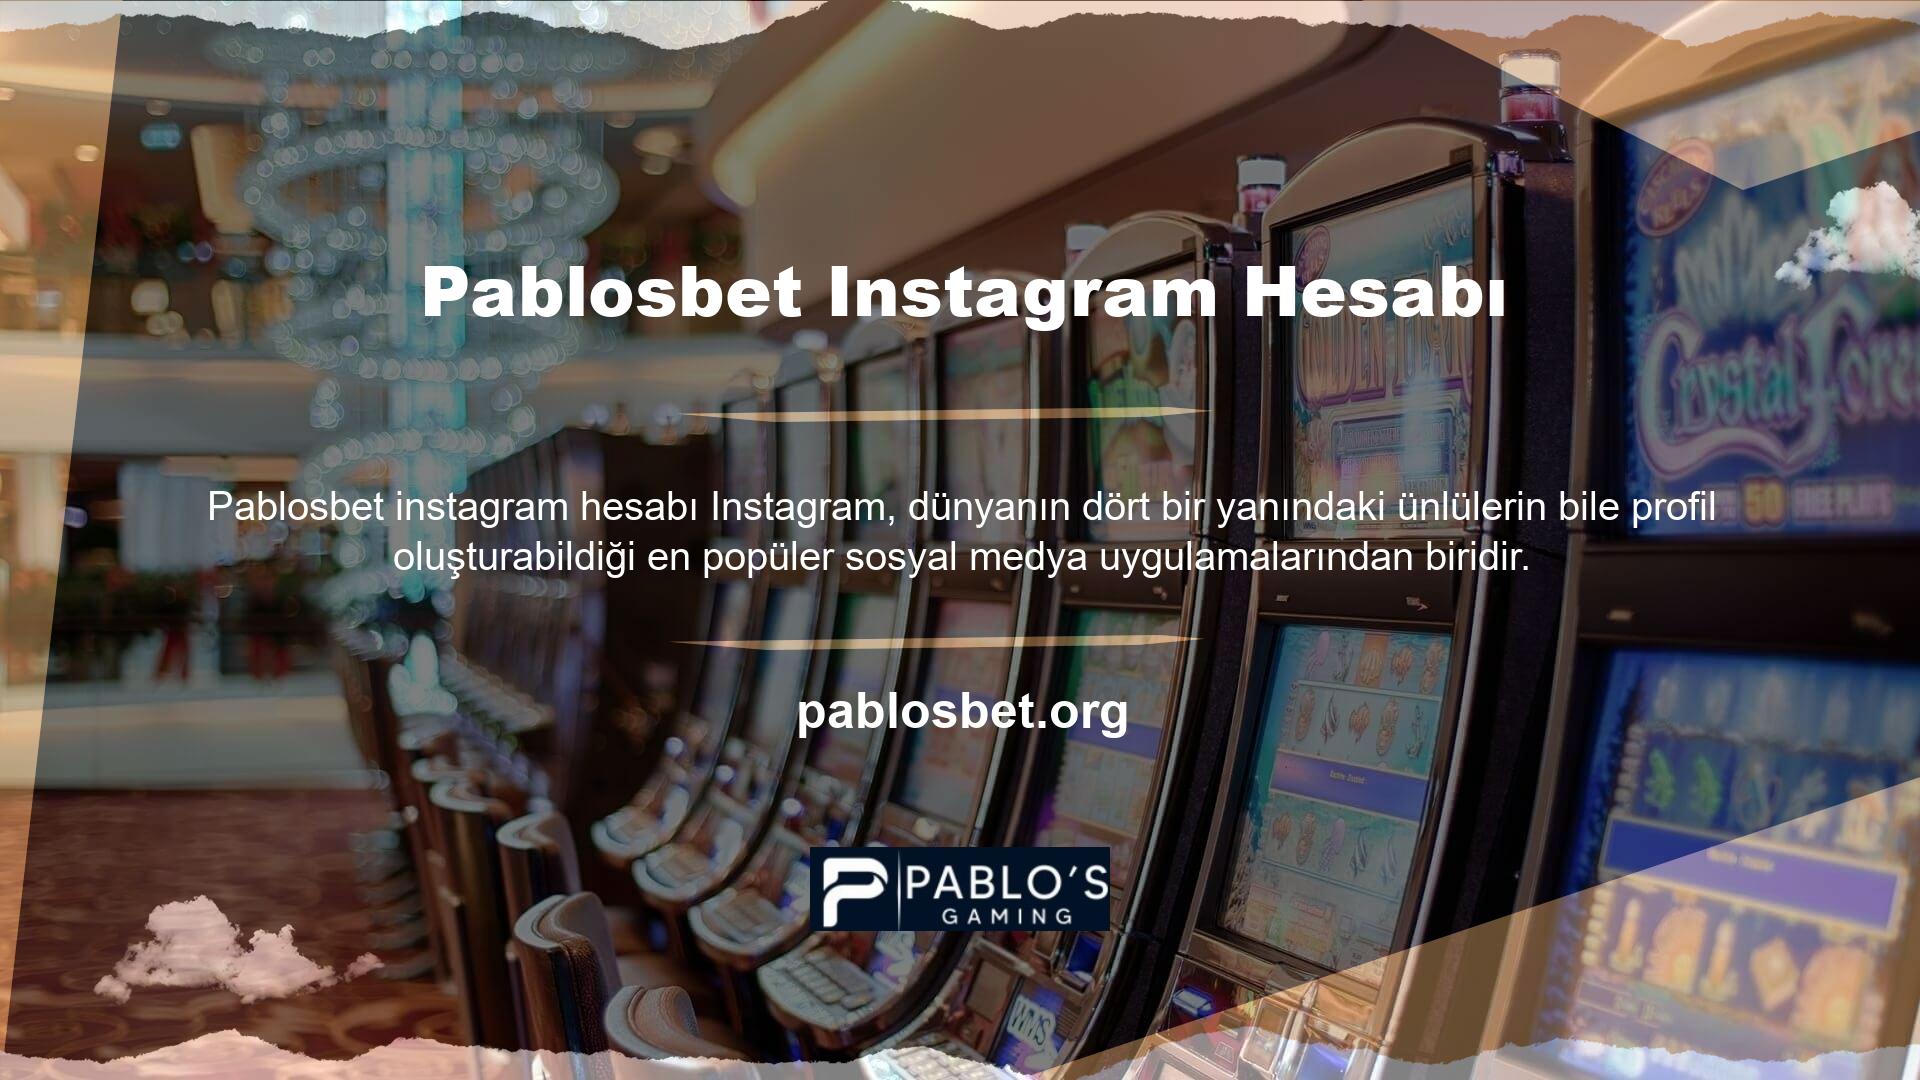 Pablosbet Instagram hesabına baktım ve paylaştıkları fotoğraflardan site hakkında bilgi alabildiklerini gördüm